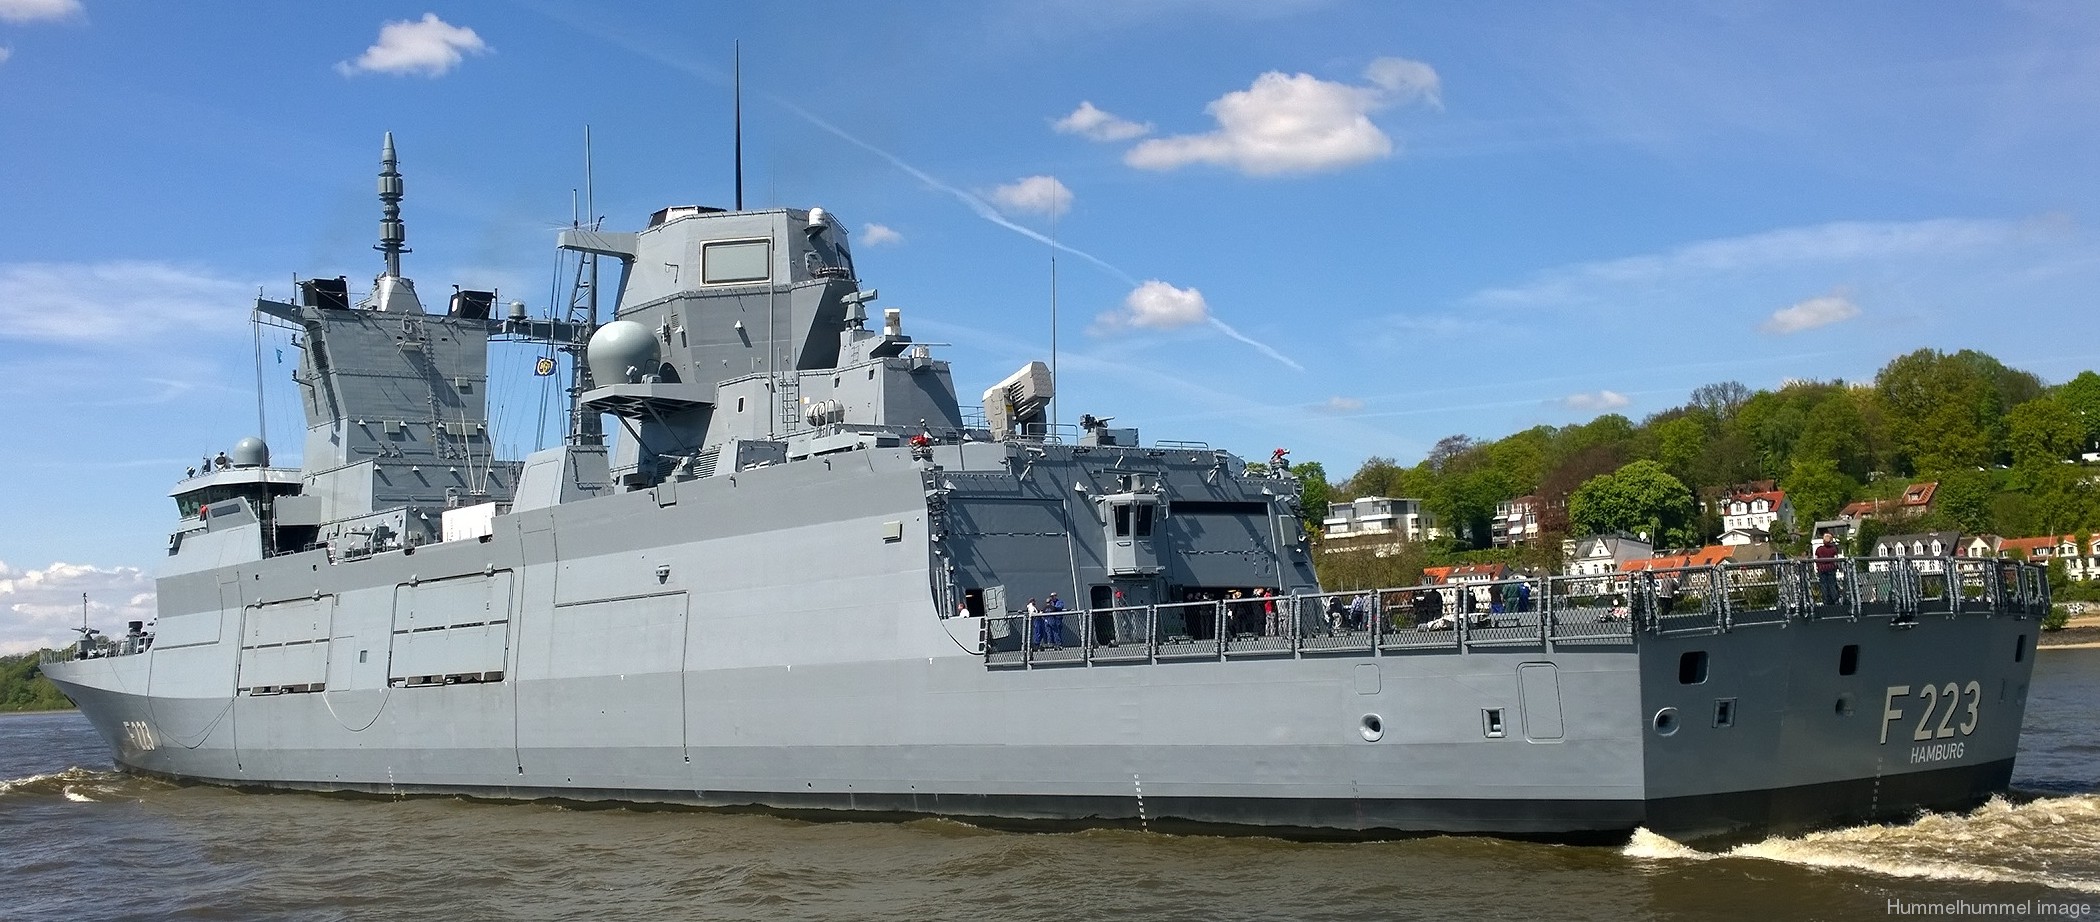 f-223 fgs nordrhein-westfalen type 125 baden wurttemberg class frigate german navy 02